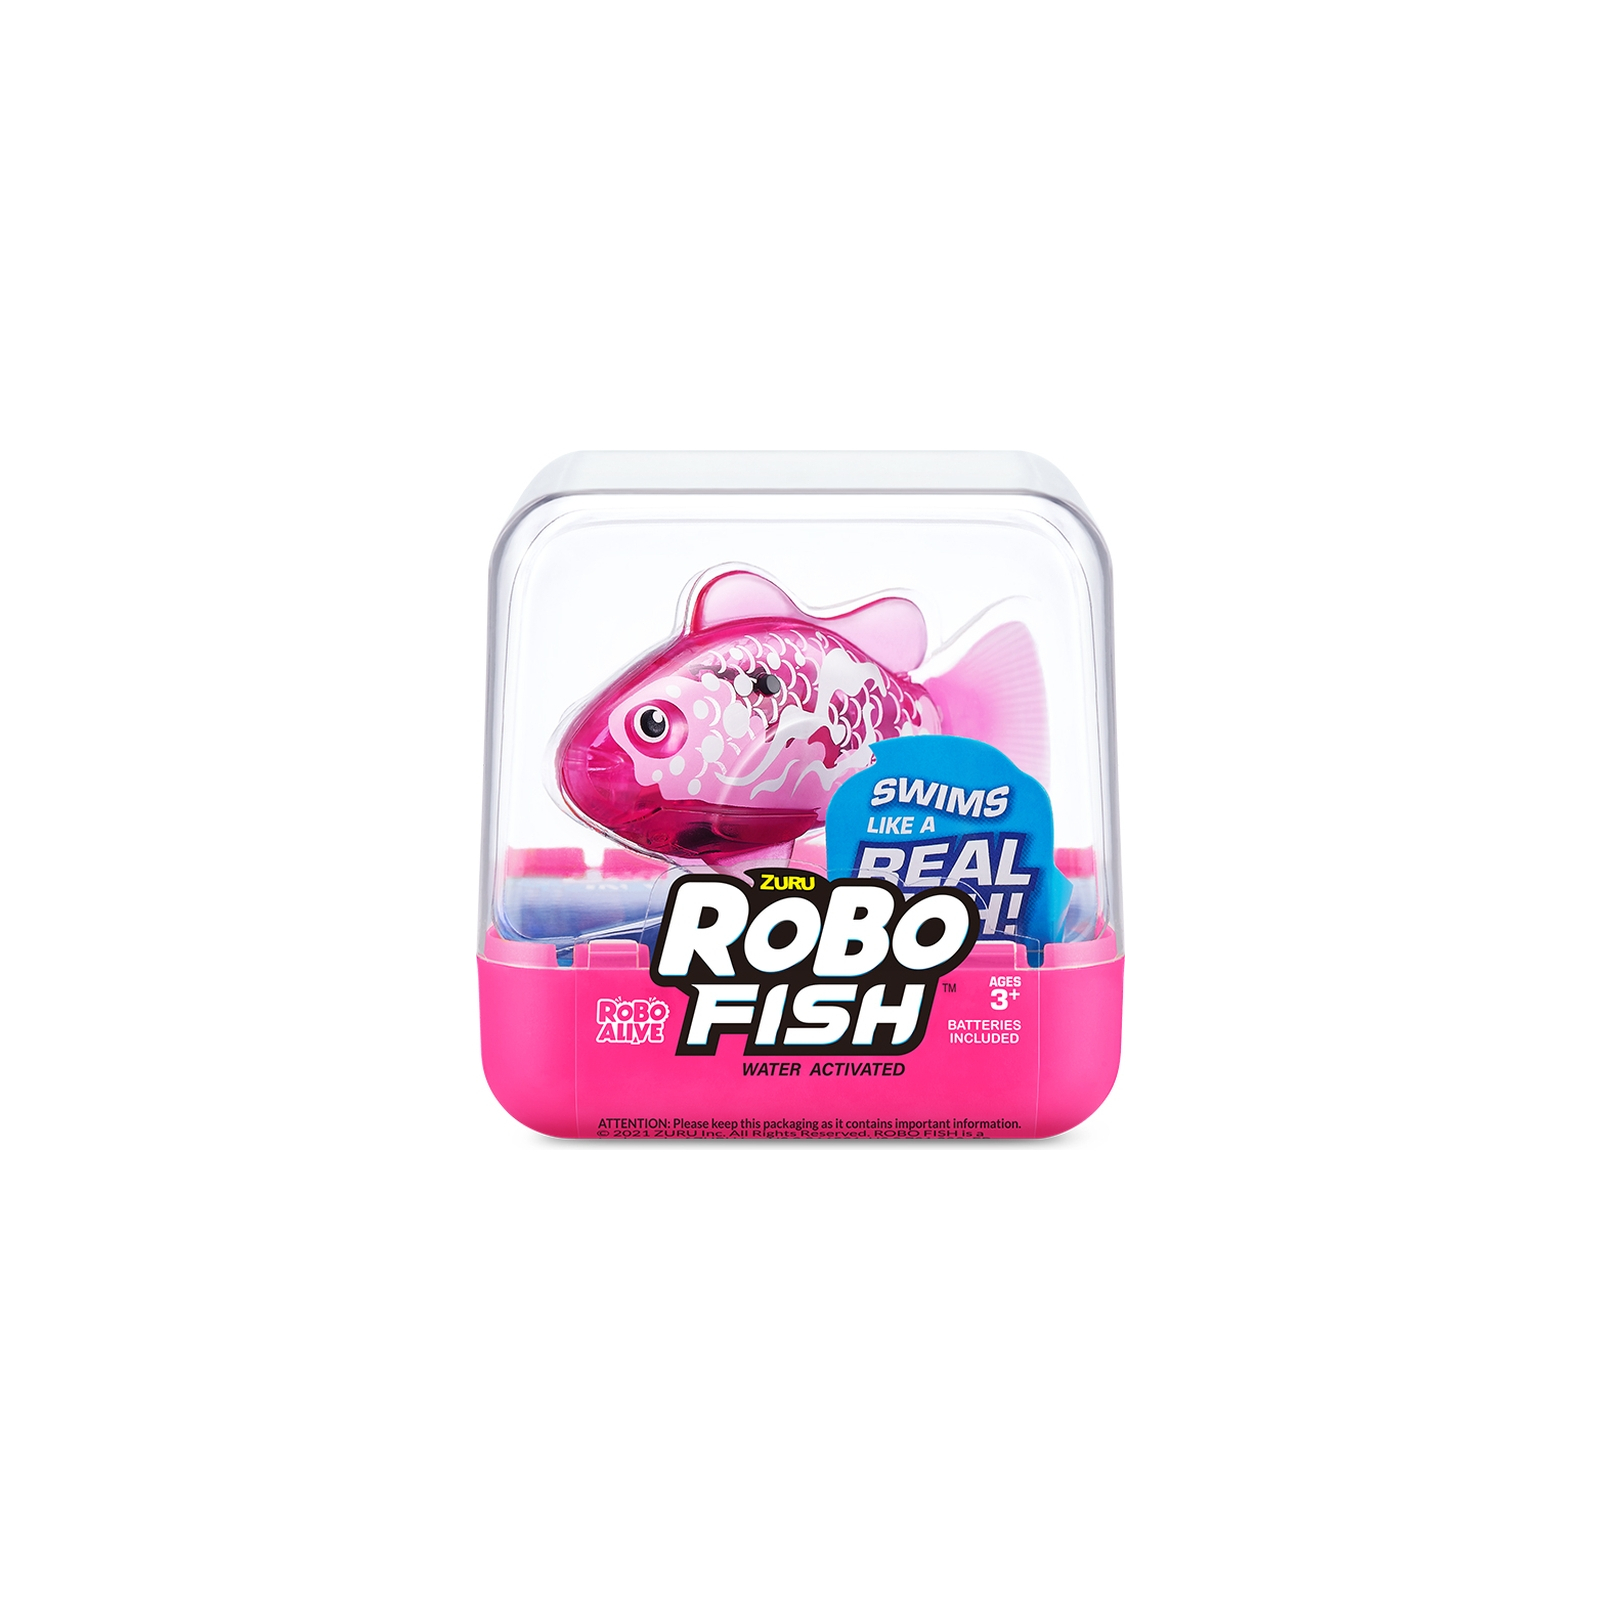 Інтерактивна іграшка Pets & Robo Alive S3 - Роборибка (рожева) (7191-6)